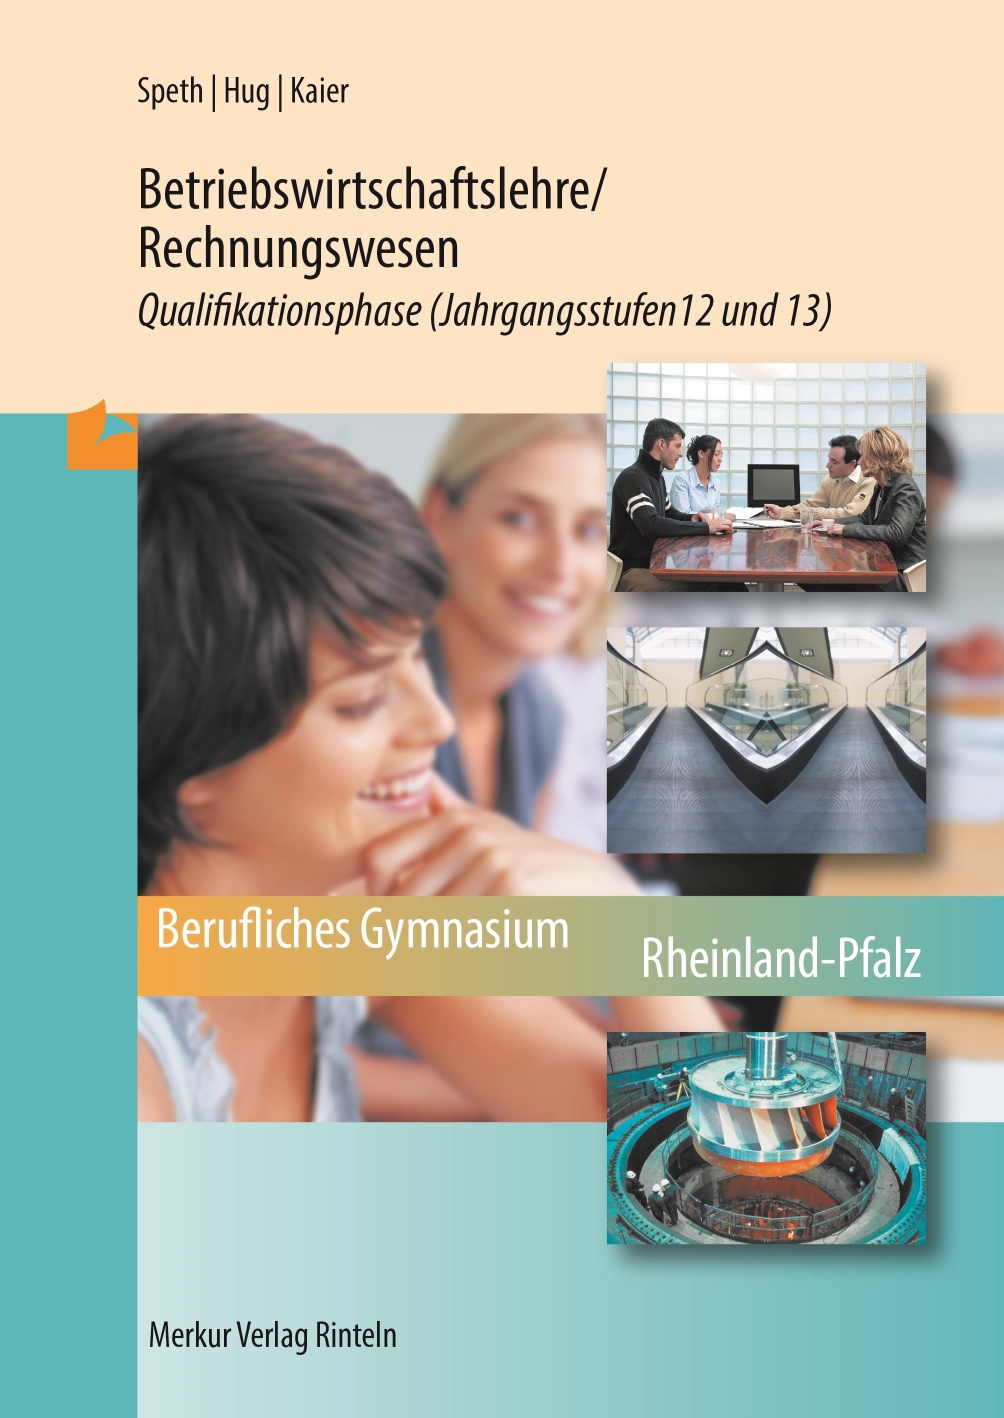 Betriebswirtschaftslehre / Rechnungswesen - Qualifikationsphase Jahrgangsstufen 12 und 13 (Rheinland-Pfalz)